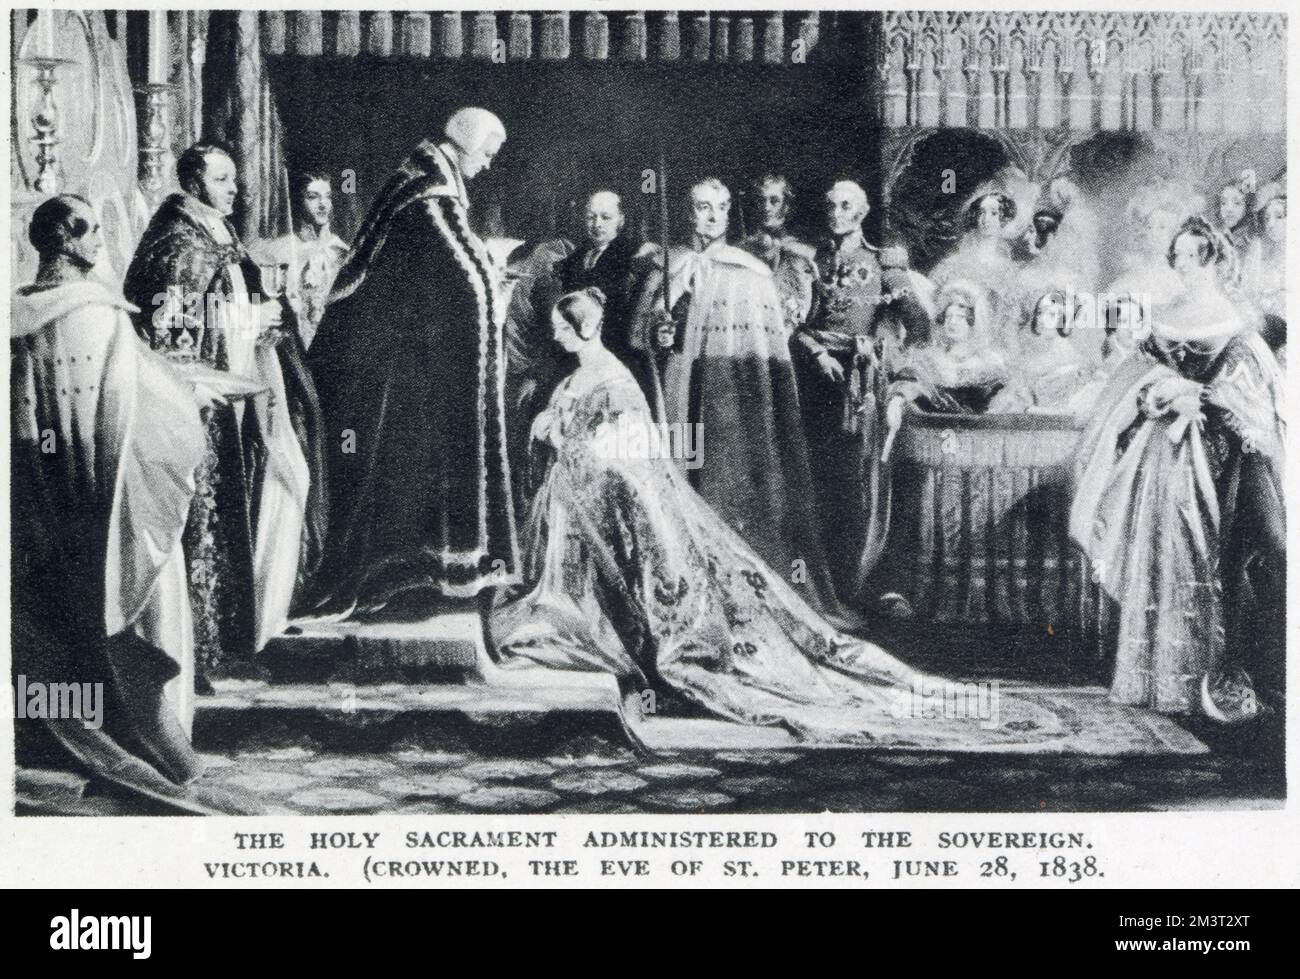 Das heilige Sakrament, das der Herrscherin, Königin Victoria, übertragen wurde, krönte am Vorabend von St. Peter. Stockfoto